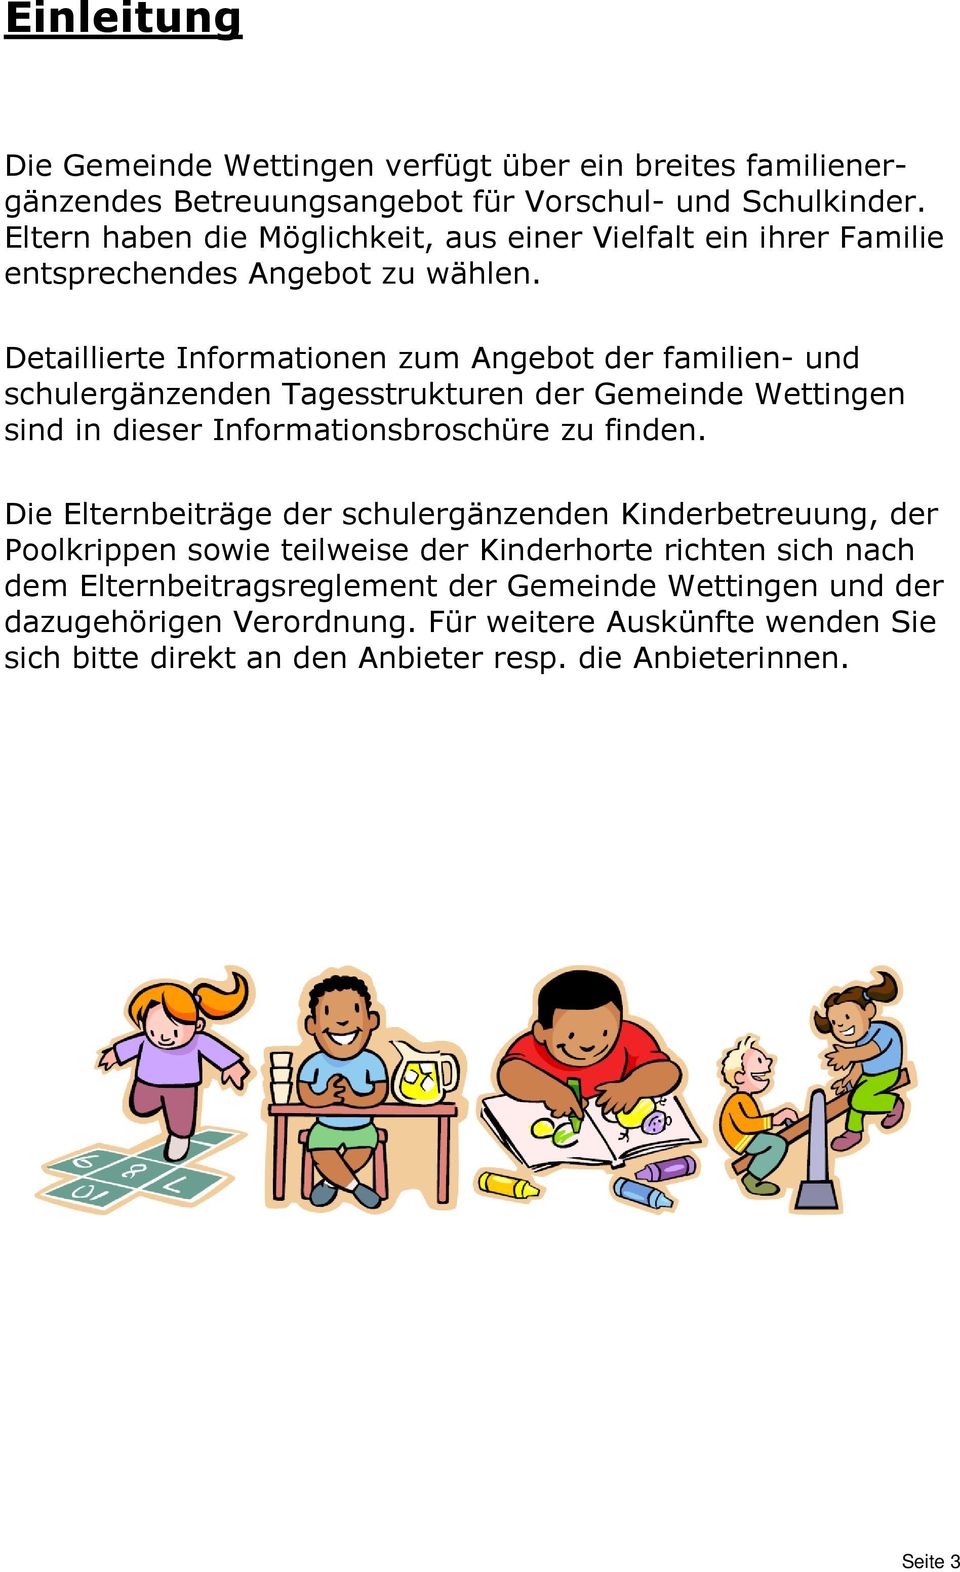 Detaillierte Informationen zum Angebot der familien- und schulergänzenden Tagesstrukturen der Gemeinde Wettingen sind in dieser Informationsbroschüre zu finden.